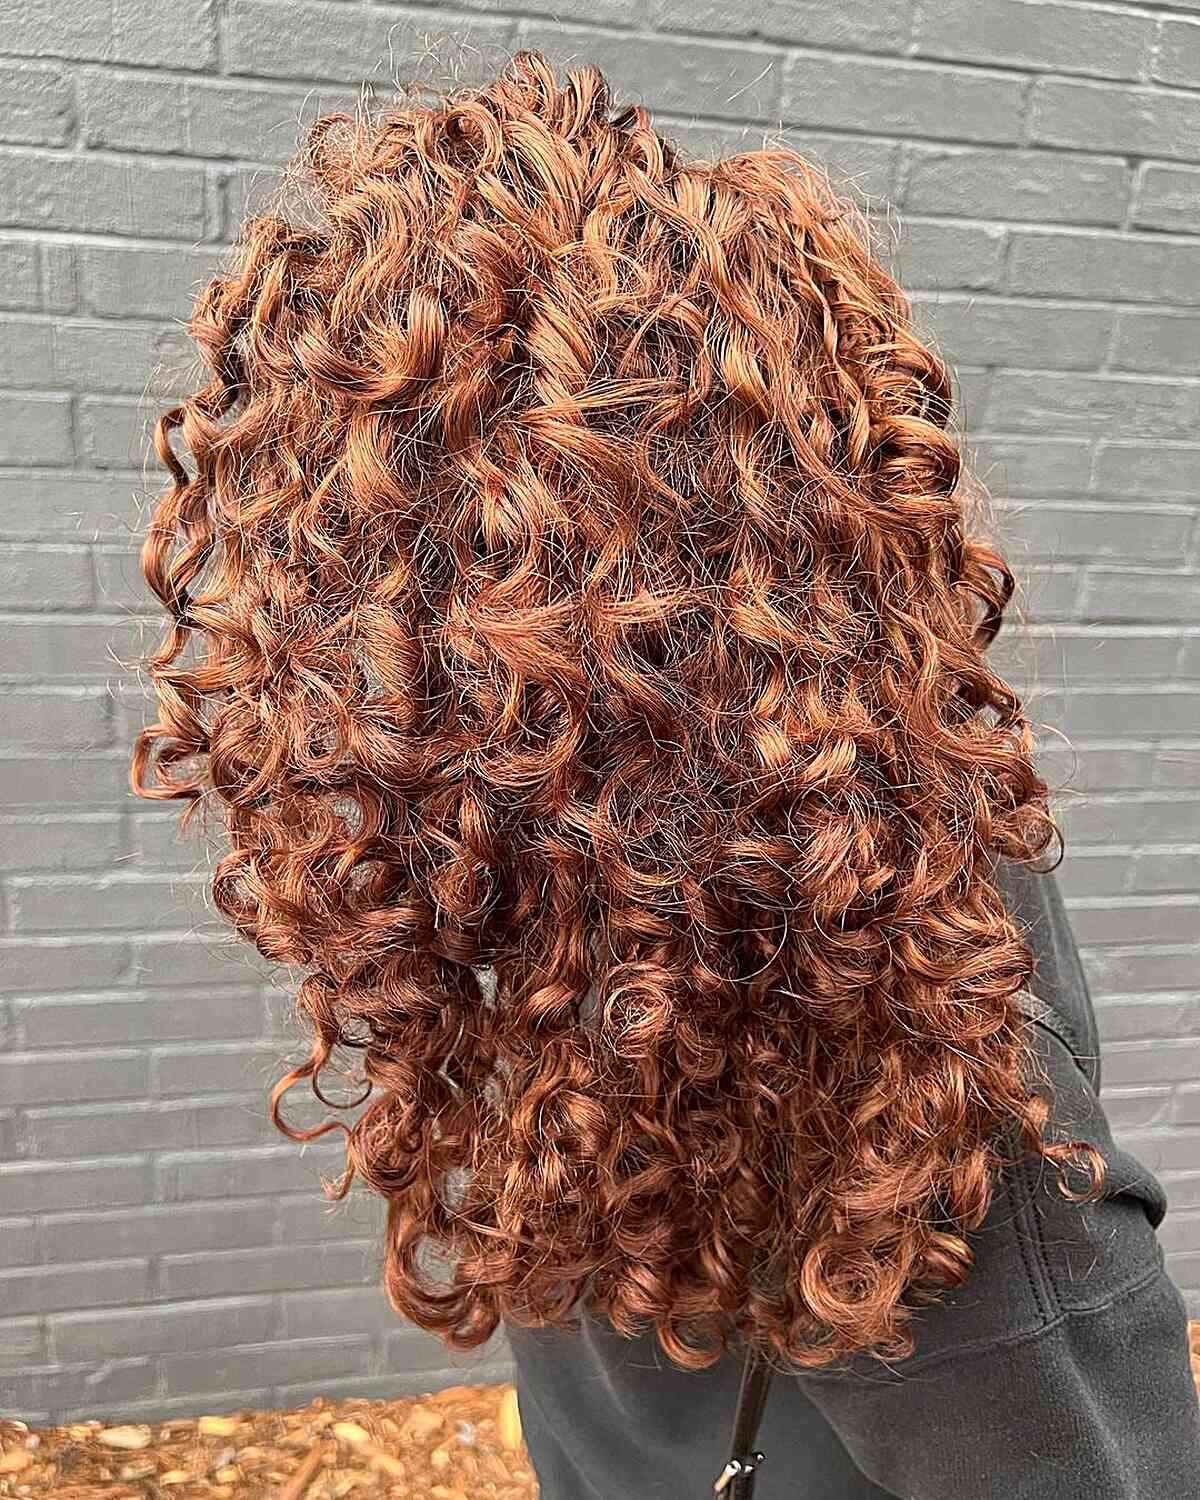 Curly Natural Auburn Hair